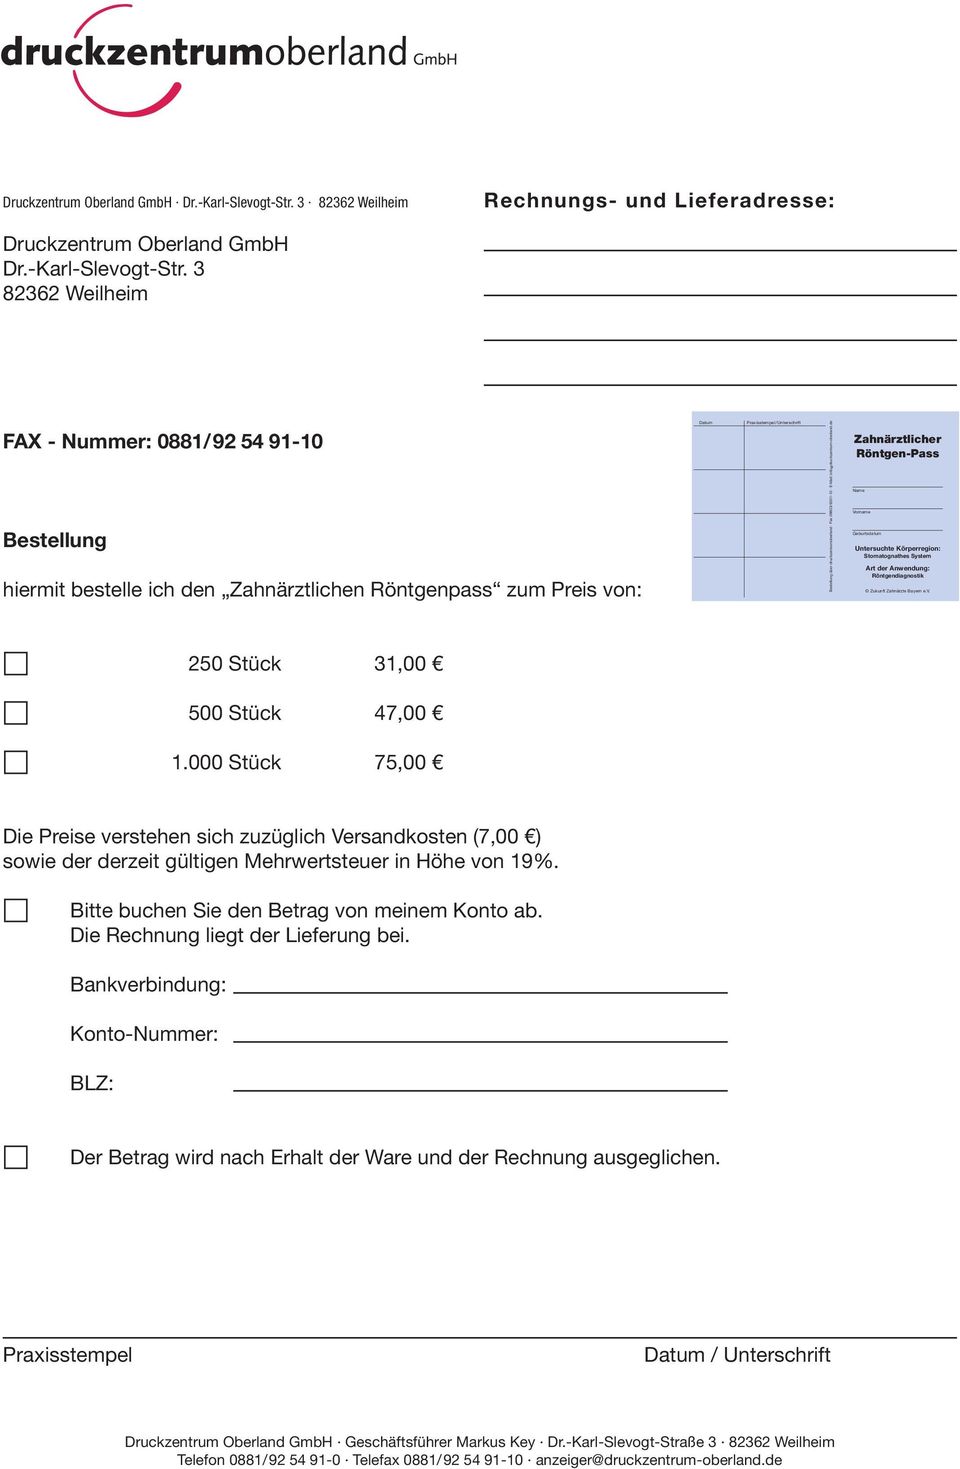 Praxisstempel/Unterschrift Praxisstempel/Unterschrift Bestellung über druckzentrumoberland Fax 08803/6301-10 E-Mail: info@druckzentrum-oberland.